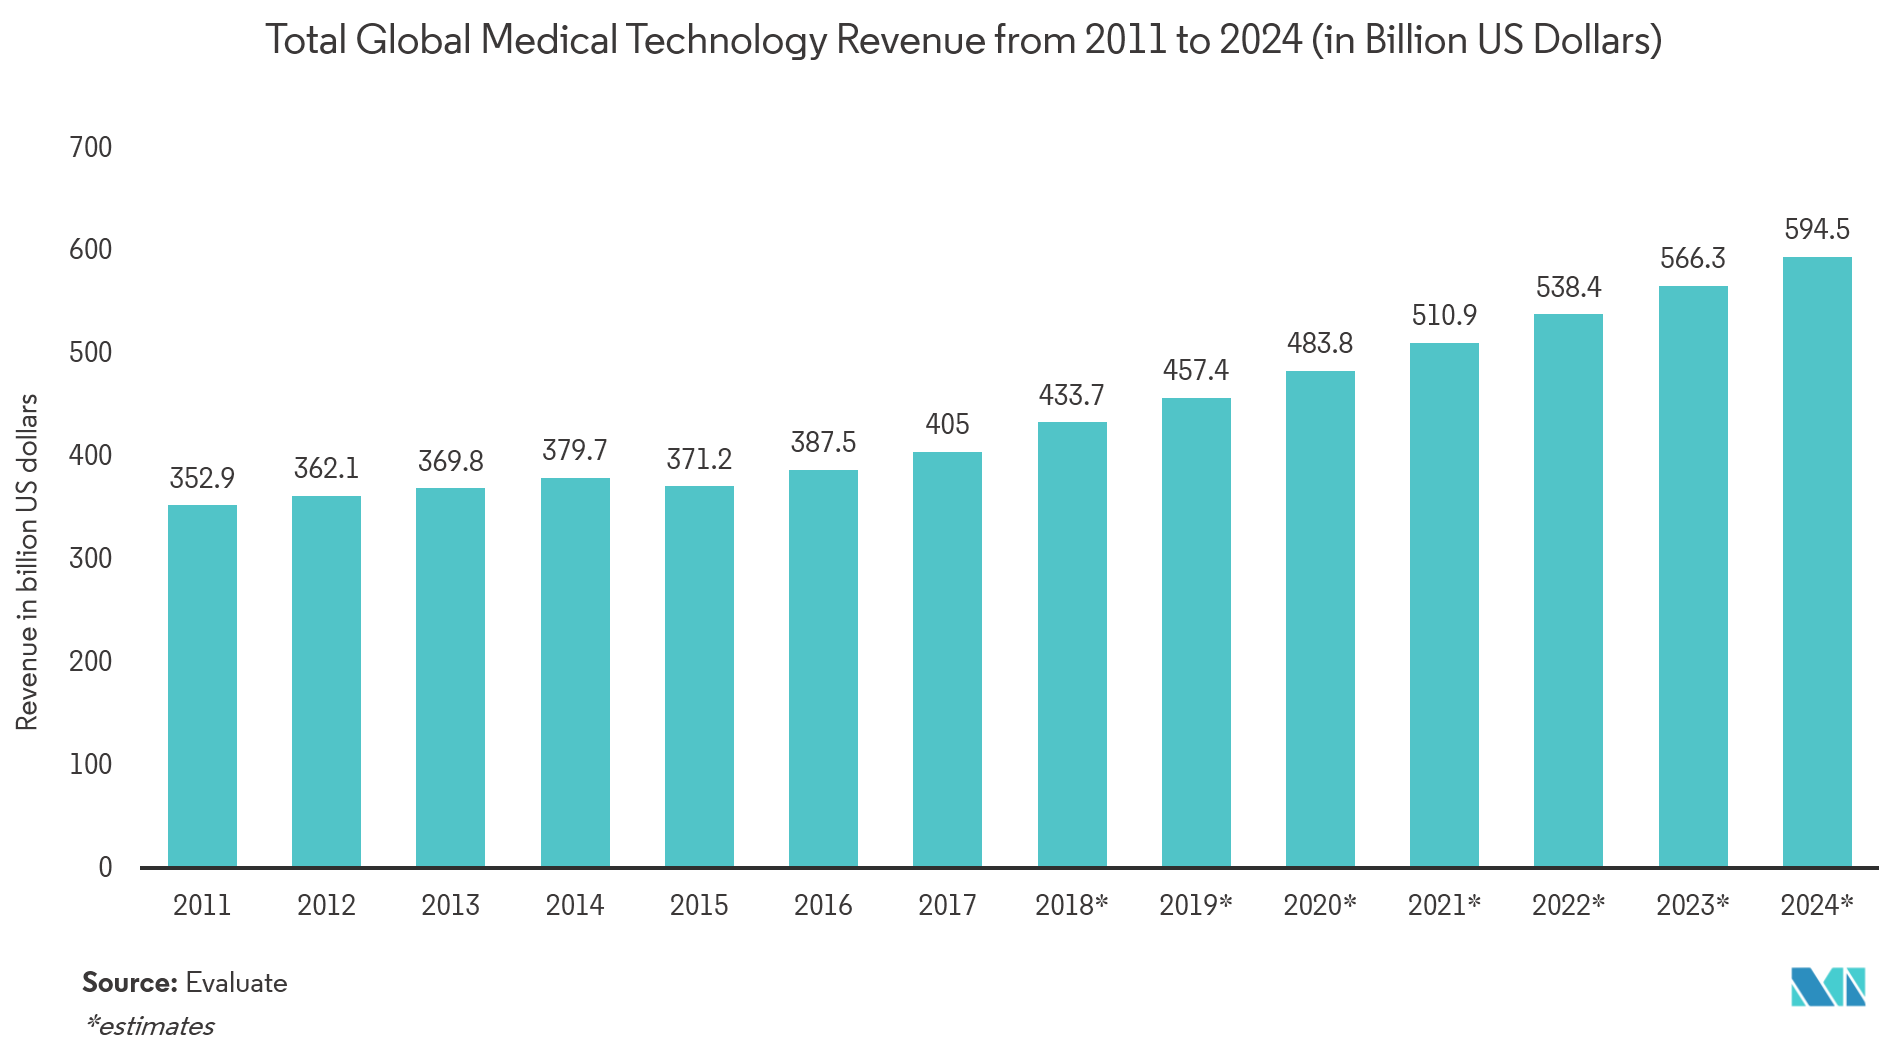 Mercado de sensores biomédicos ingresos totales mundiales por tecnología médica de 2011 a 2024 (en miles de millones de dólares estadounidenses)